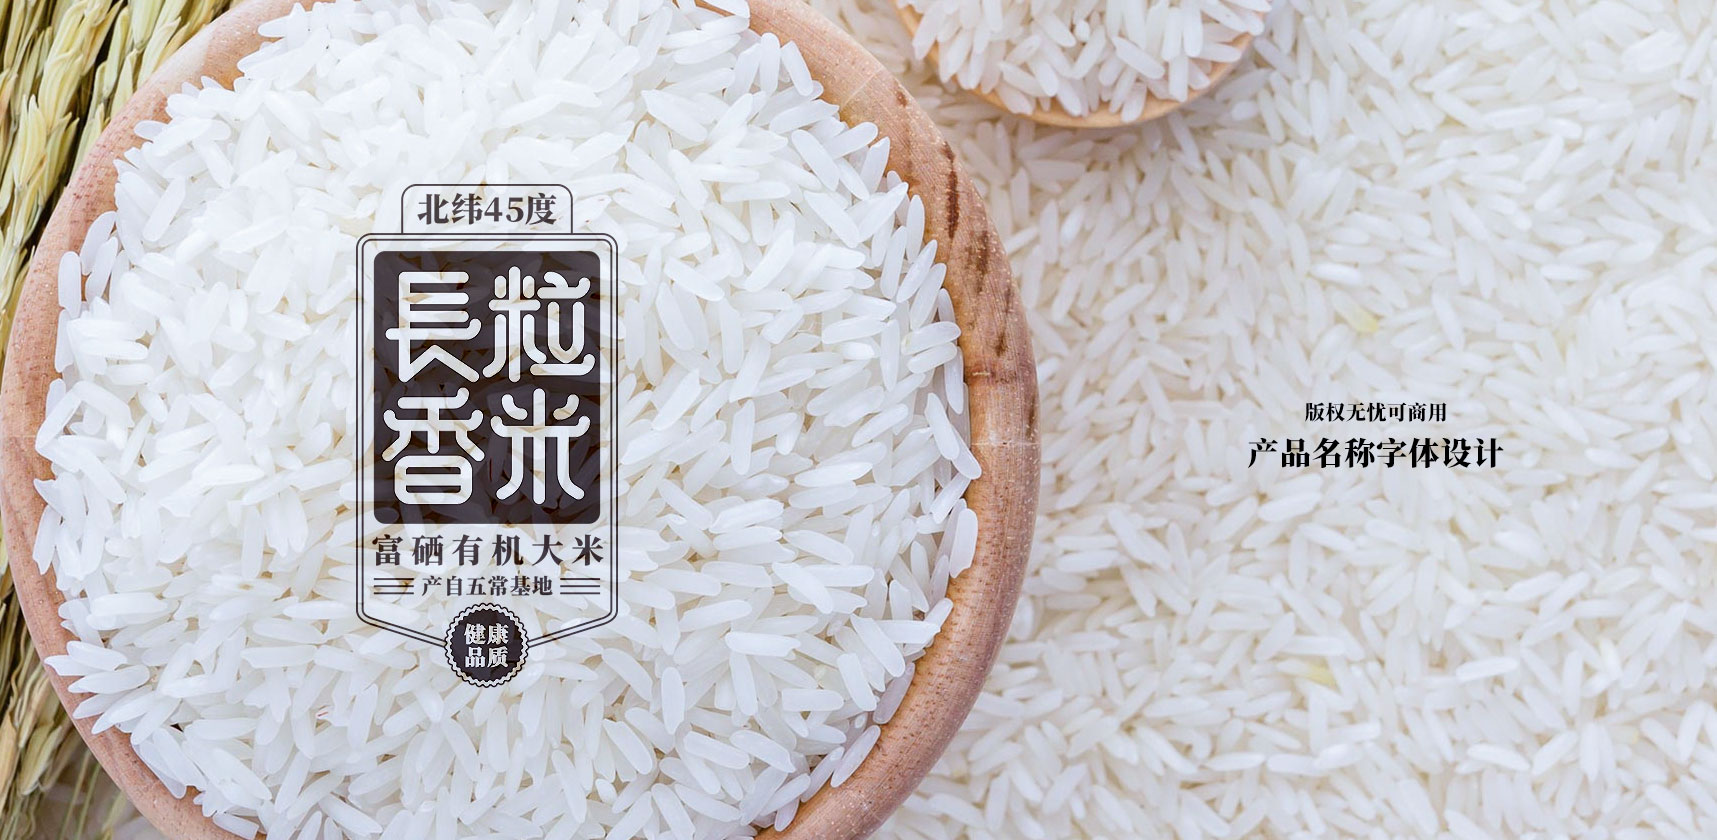 金谷尚品大米产品包装logo设计